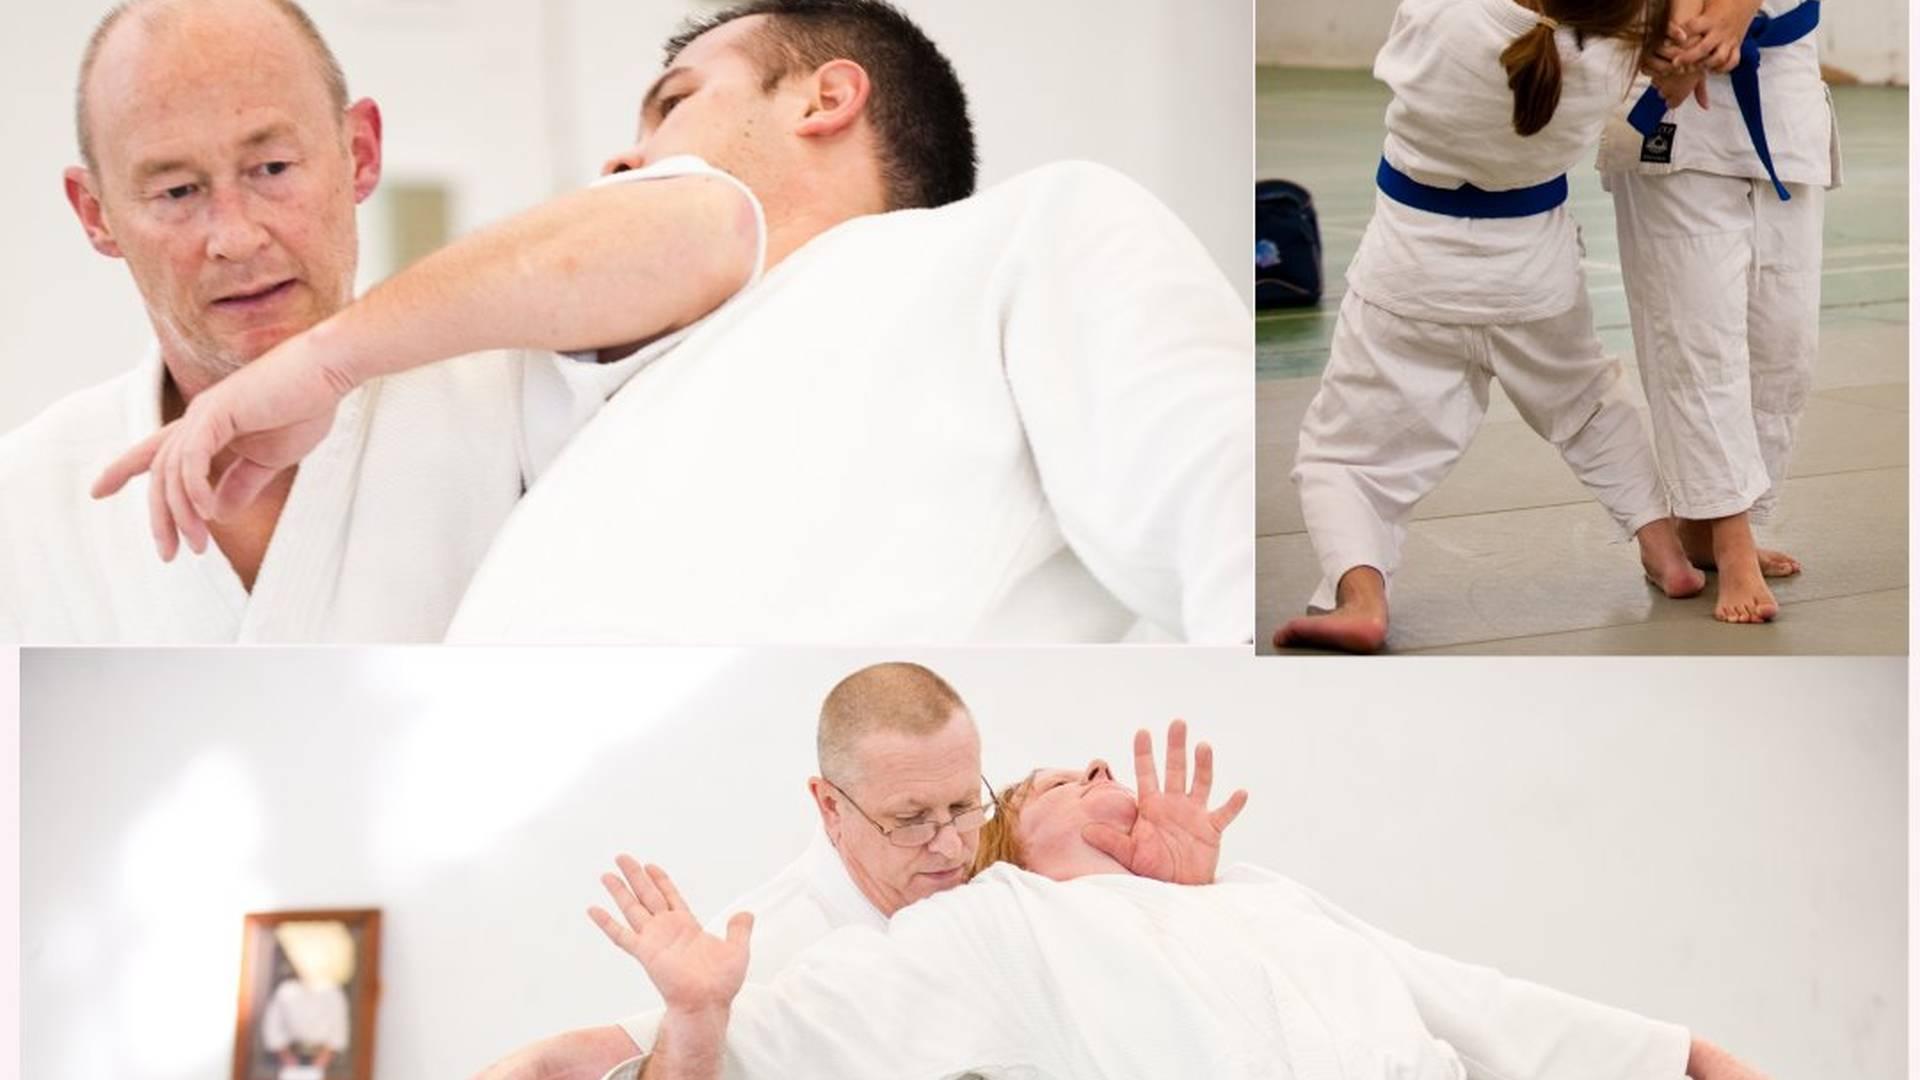 Martial Arts - Kenshinkai Aikido photo